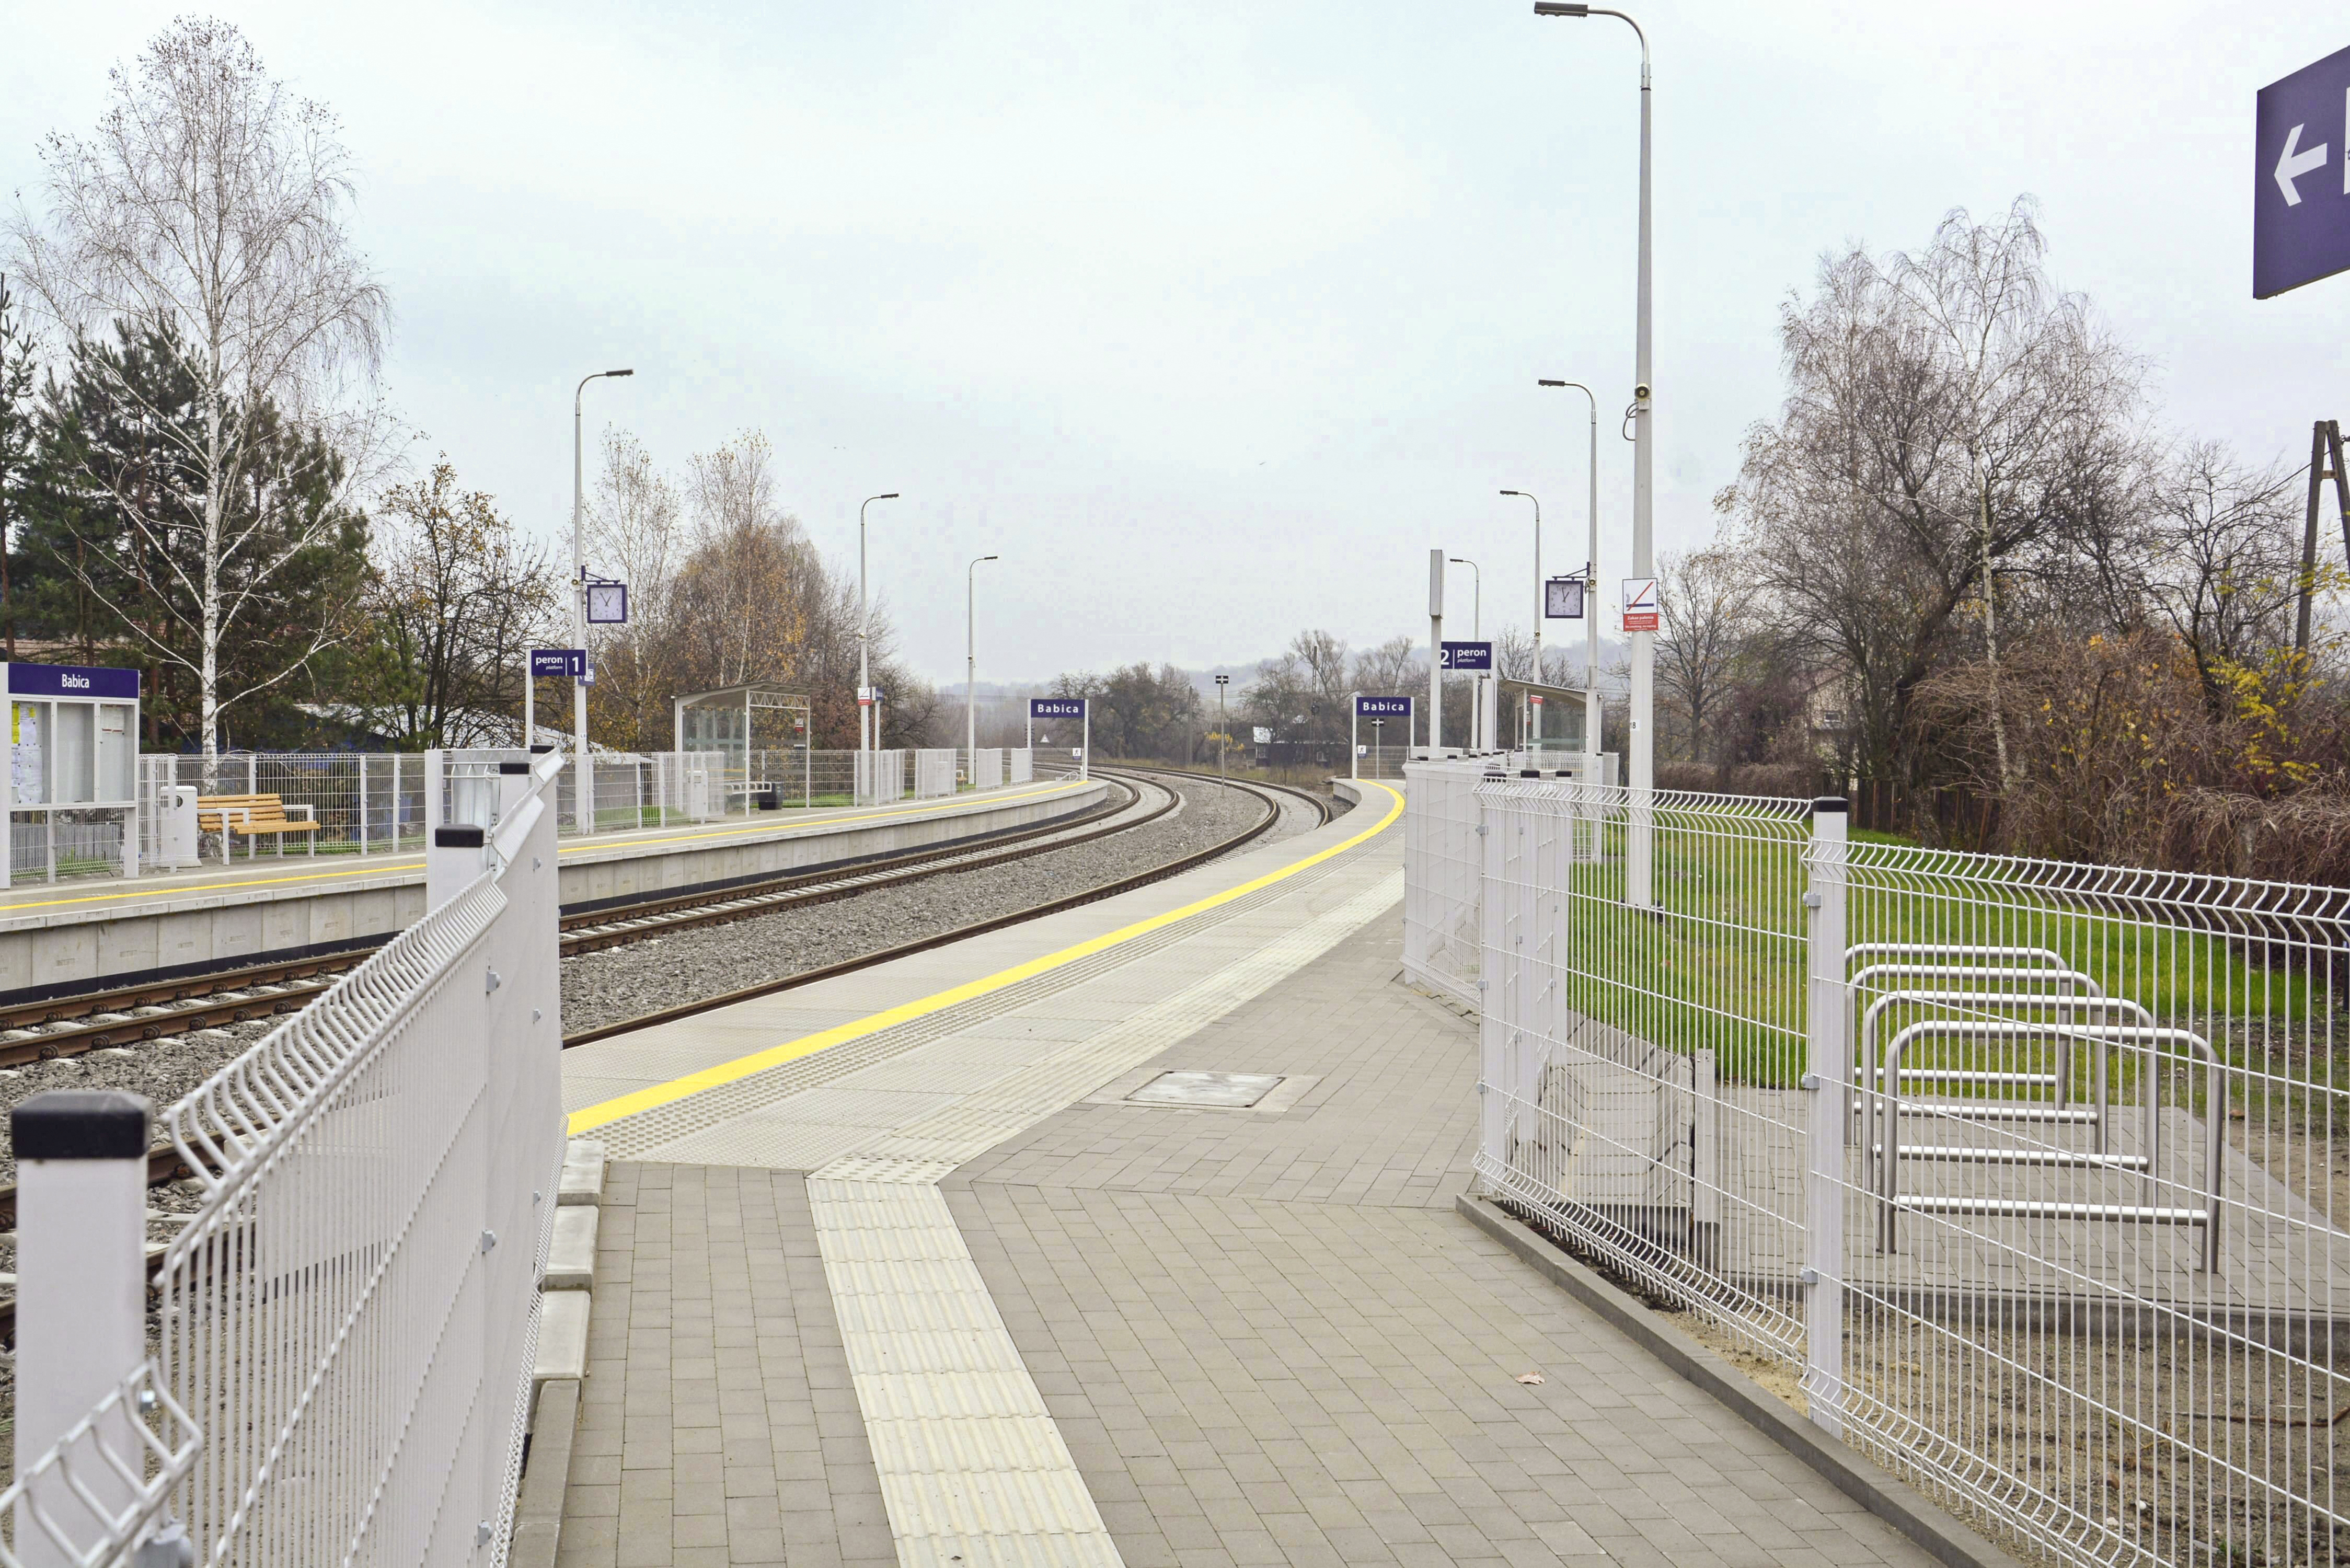 Prace budowlane na torze kolejowym, Stacja kolejowa, Babica - Spoorwegbouw